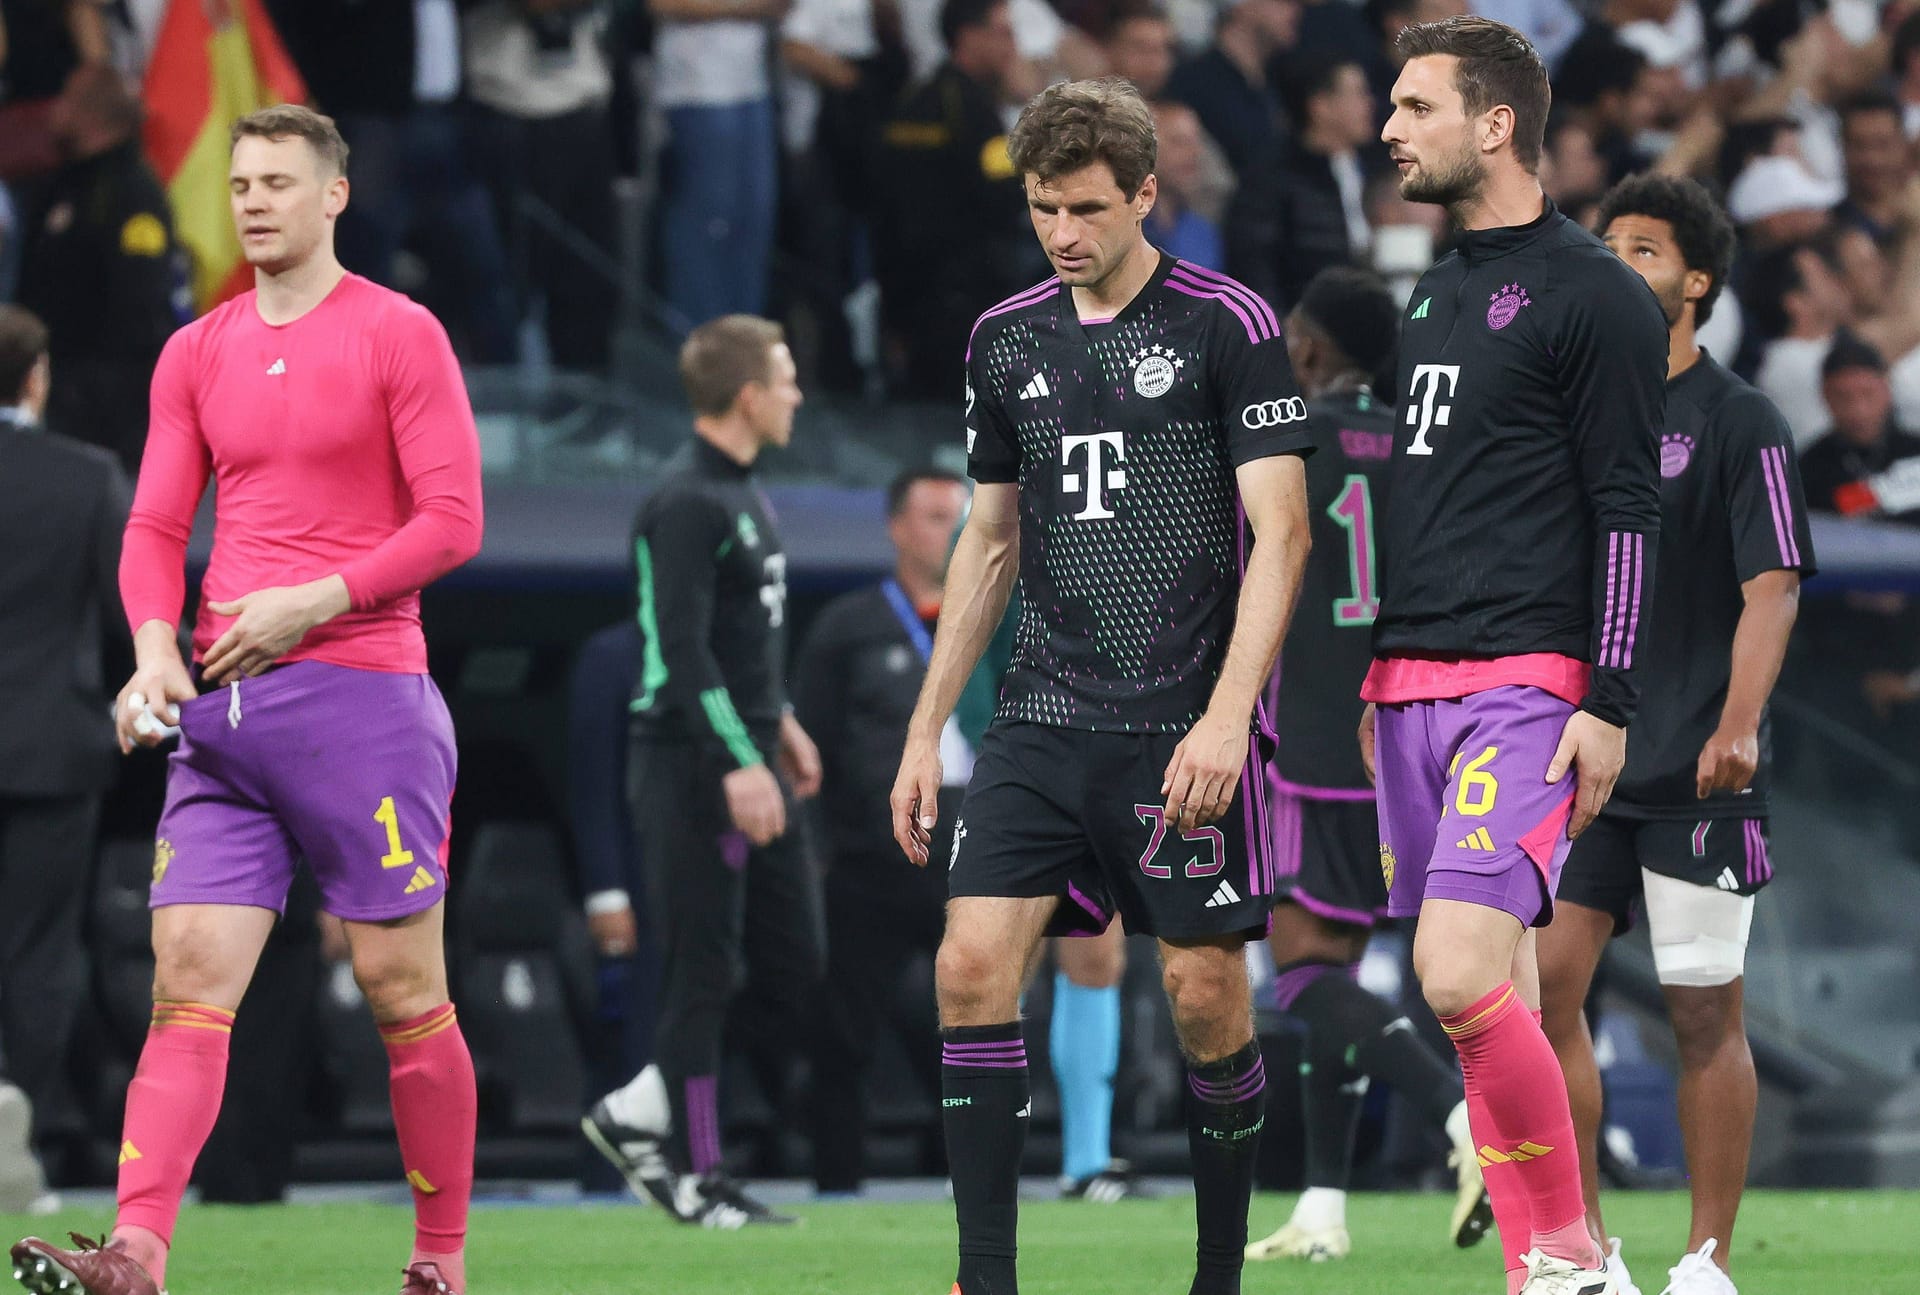 Der FC Bayern hat das deutsche Champions-League-Finale in Wembley gegen Borussia Dortmund auf dramatische Art und Weise verpasst. Im Halbfinalrückspiel bei Real Madrid sahen die Münchner lange wie der sichere Sieger aus, bis ausgerechnet Kapitän Manuel Neuer schwer patzte. Die Einzelkritik.